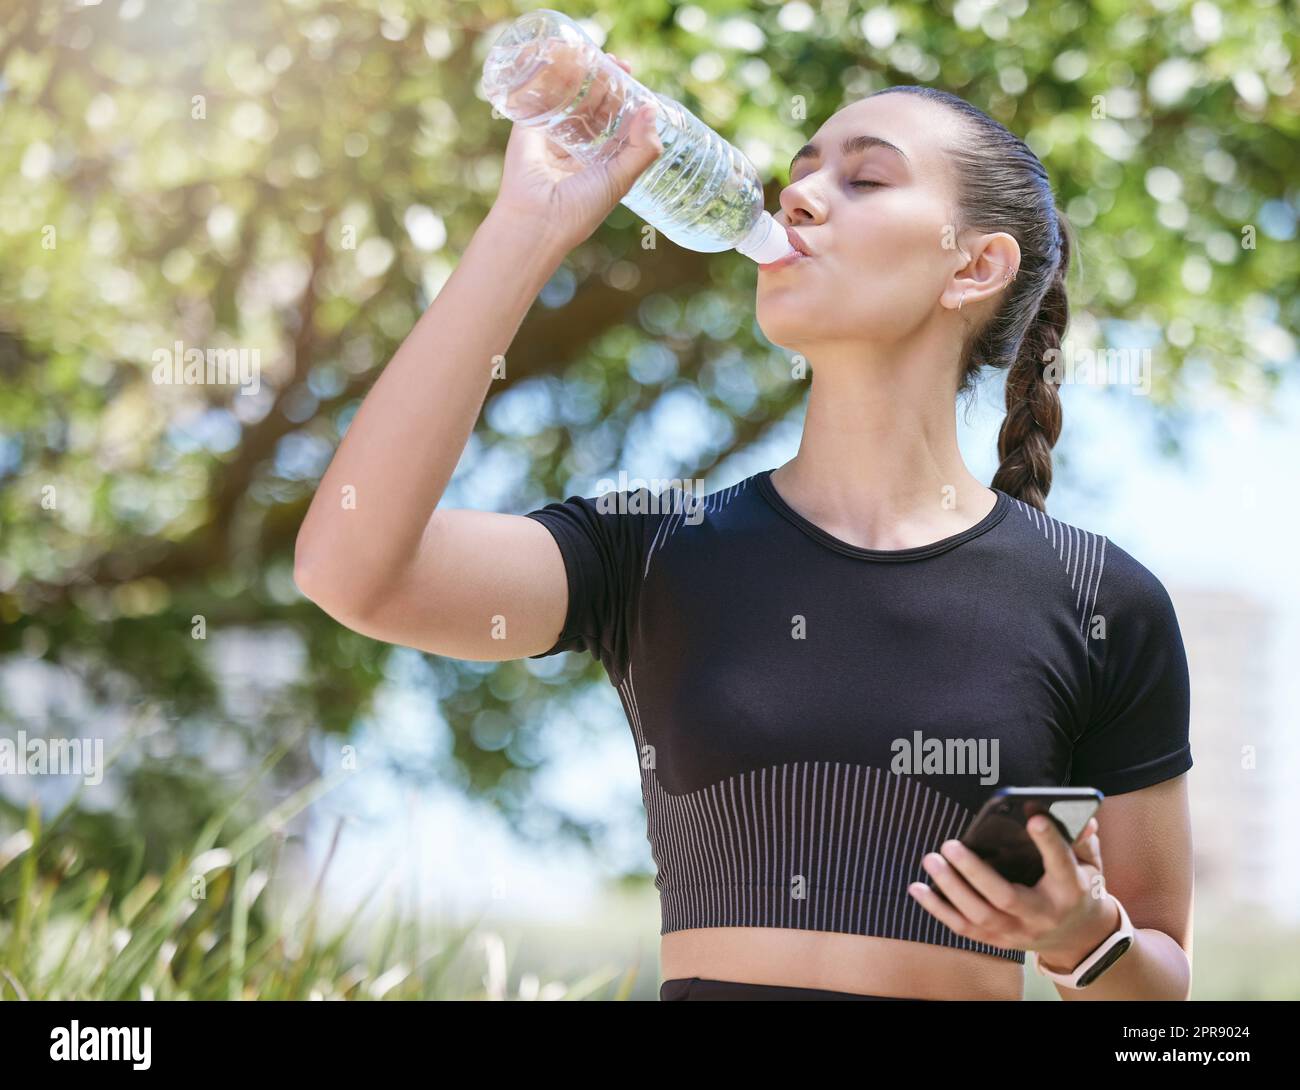 Giovane atleta femminile che prende una pausa e beve l'acqua da una bottiglia e tiene lo smartphone mentre fuori per una corsa ed esercita all'aperto durante il giorno Foto Stock